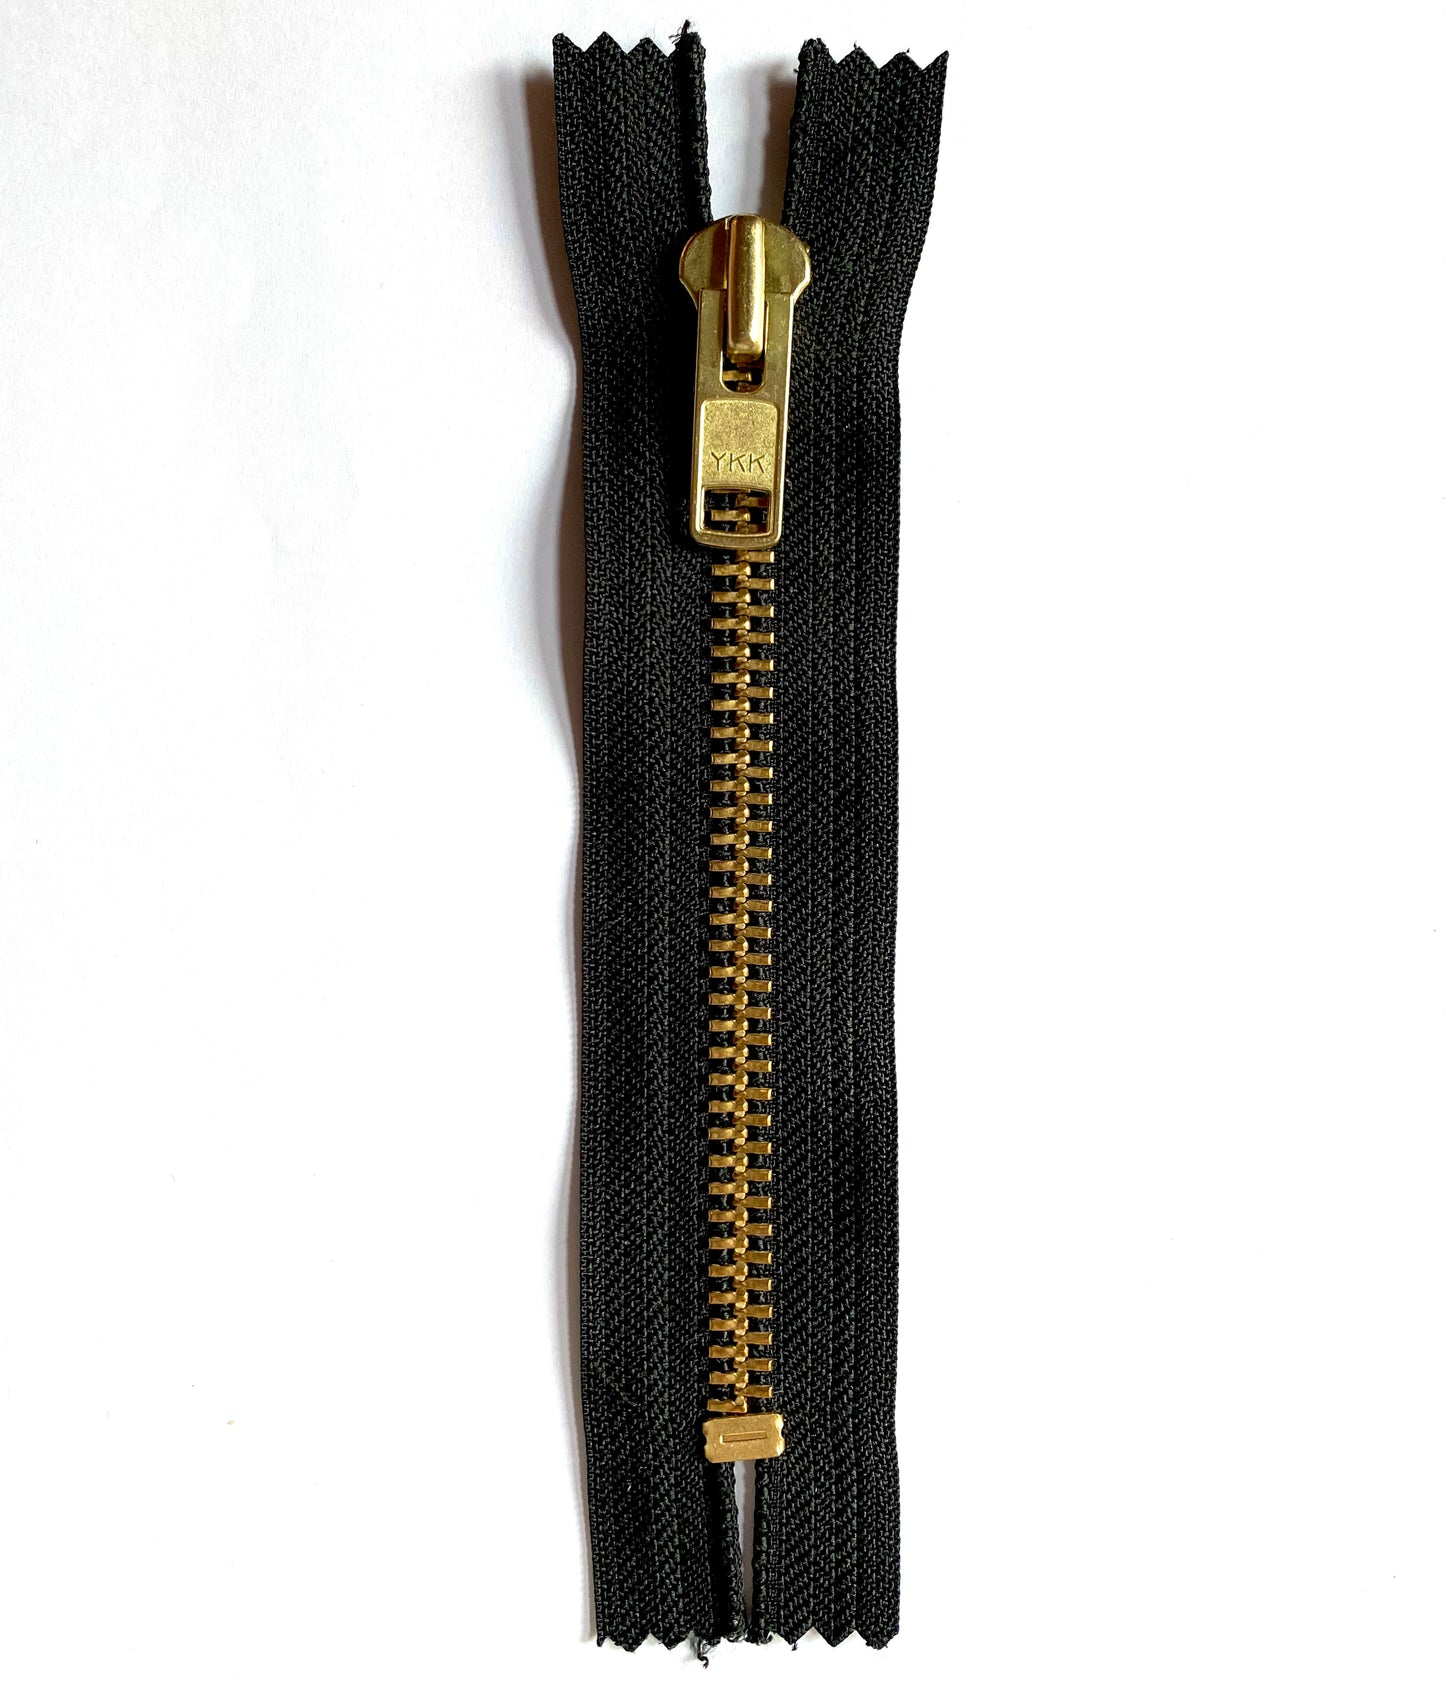 YKK non-separable metal zipper 16 cm